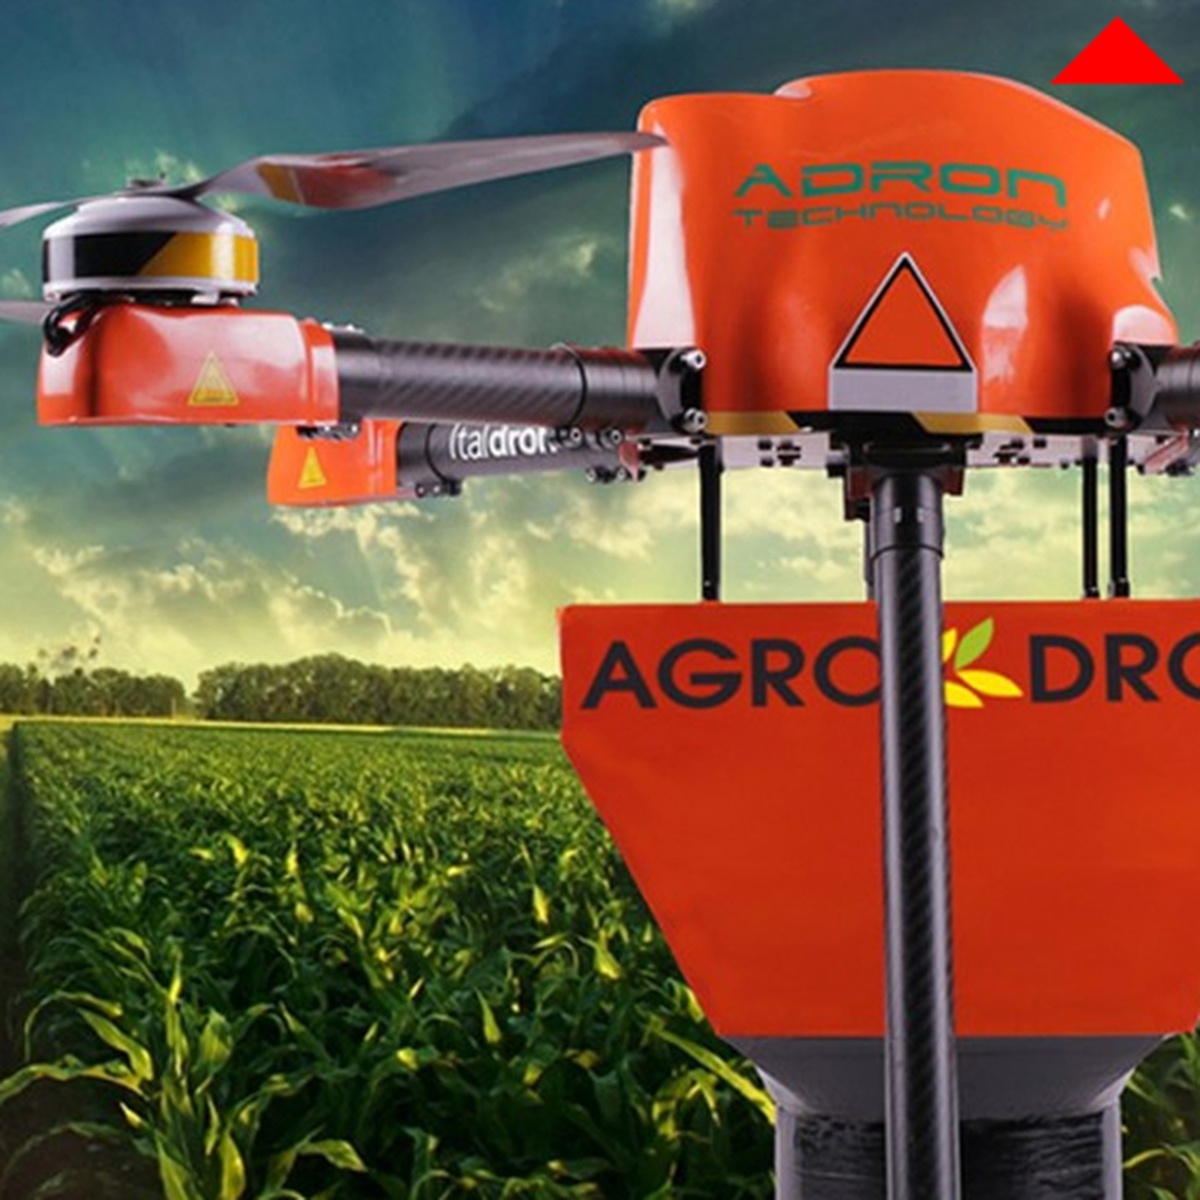 Drone contadino Agrodon, ICT Devices, Adron Technology, Italdron, Italia, 2014